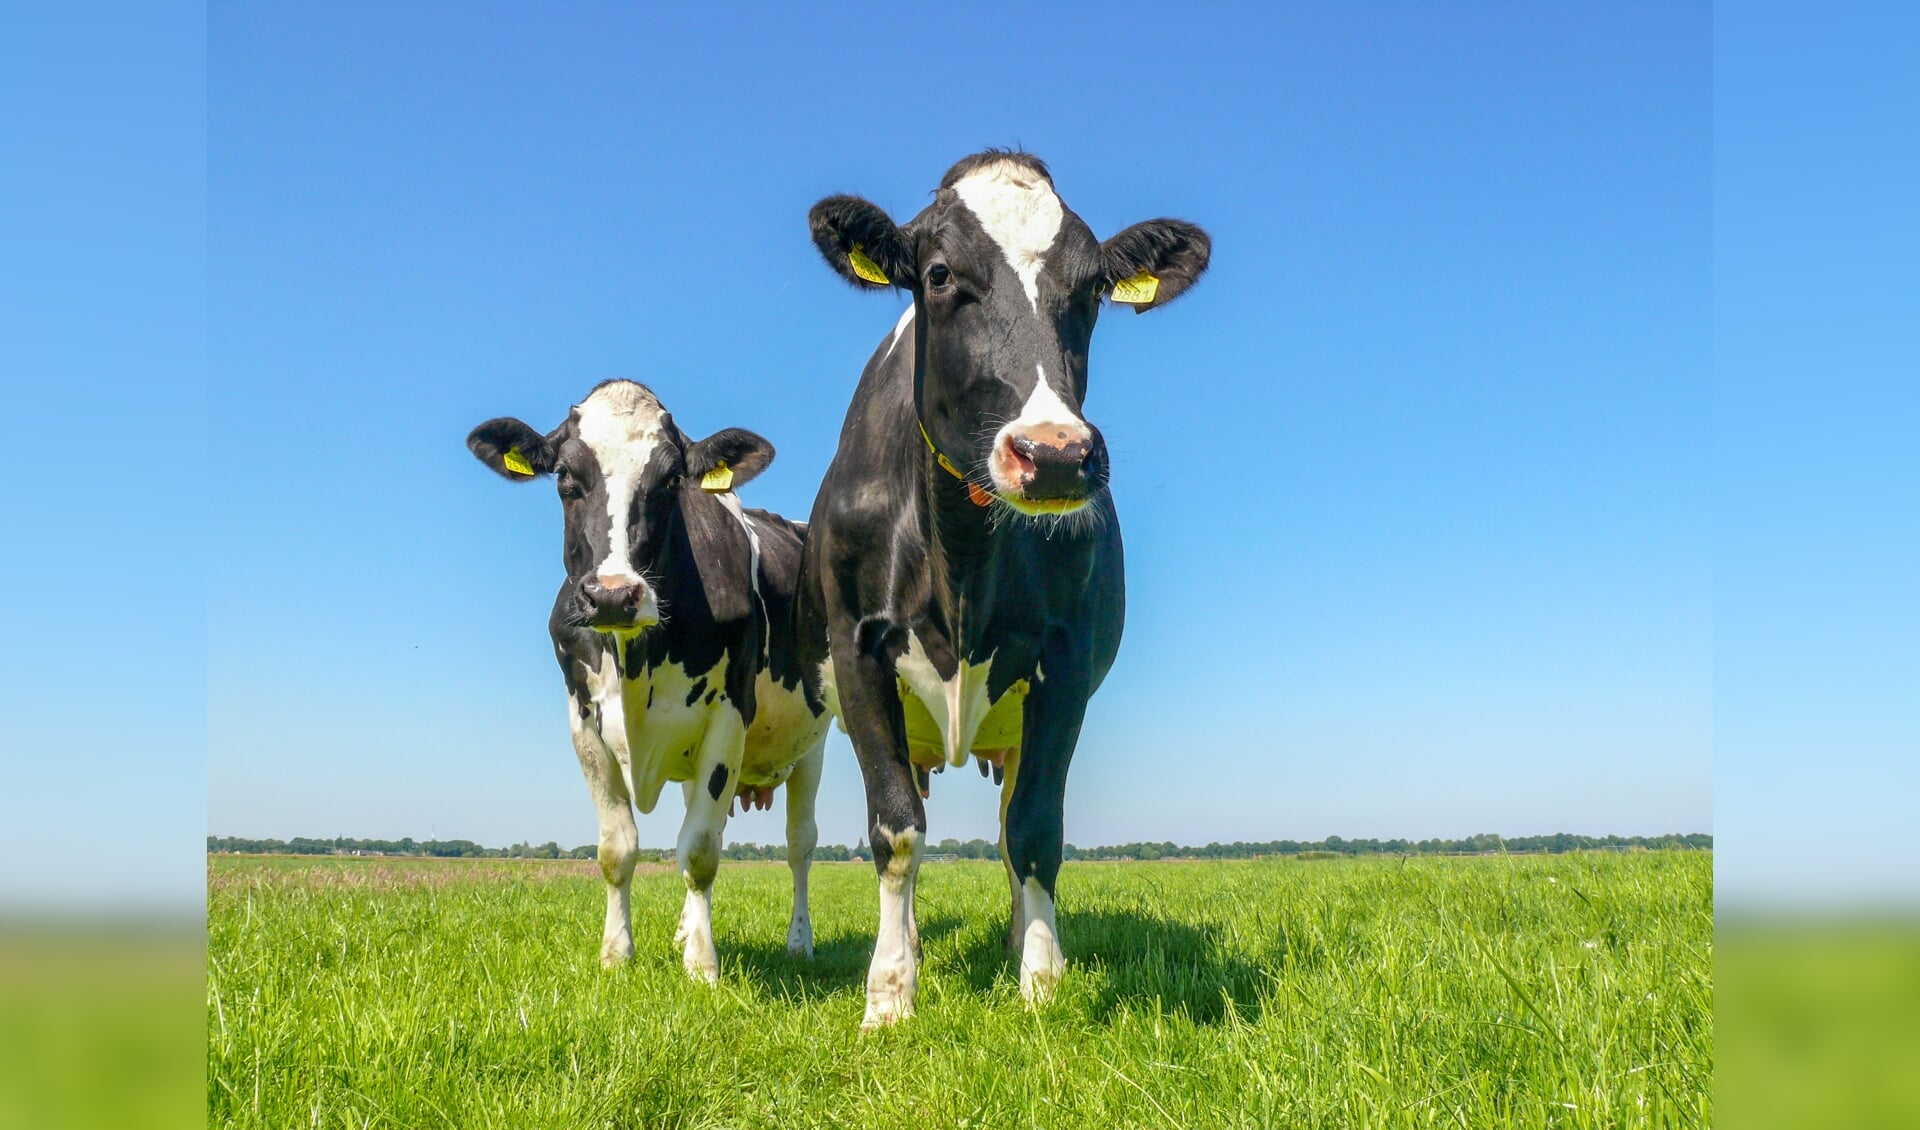 Hoe zorgen we ervoor dat we in 2050 nog steeds koeien houden én van koeien houden?